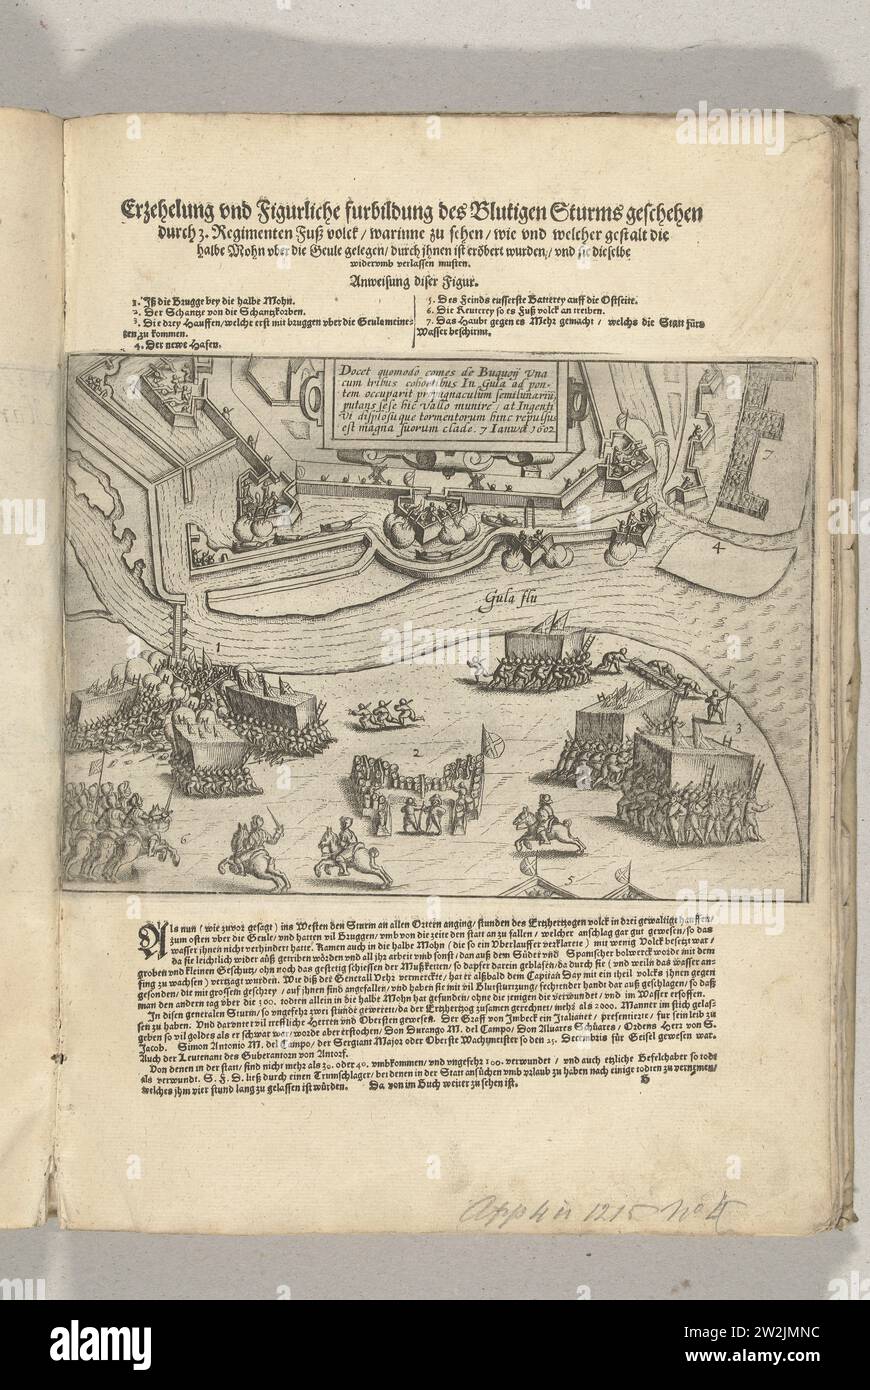 Siège d'Ostende : prise d'assaut par Bucquoy le 7 janvier 1602, 1602 - 1604 prise des défenses d'Ostende par les troupes espagnoles sous le comte de Bucquoy le 7 janvier 1602. Batailles en bas à gauche au Lunet de l'autre côté de la Geule, au milieu d'un cartouche avec inscription en latin. Au-dessus de l'impression le titre avec explication des chiffres, en bas une description des événements, en allemand. Partie des illustrations d'un journal du siège d'Ostende 1601-1604. Gravure sur papier des pays bas / impression typographique Ostende prise des défenses d'Ostende par l'Span Banque D'Images